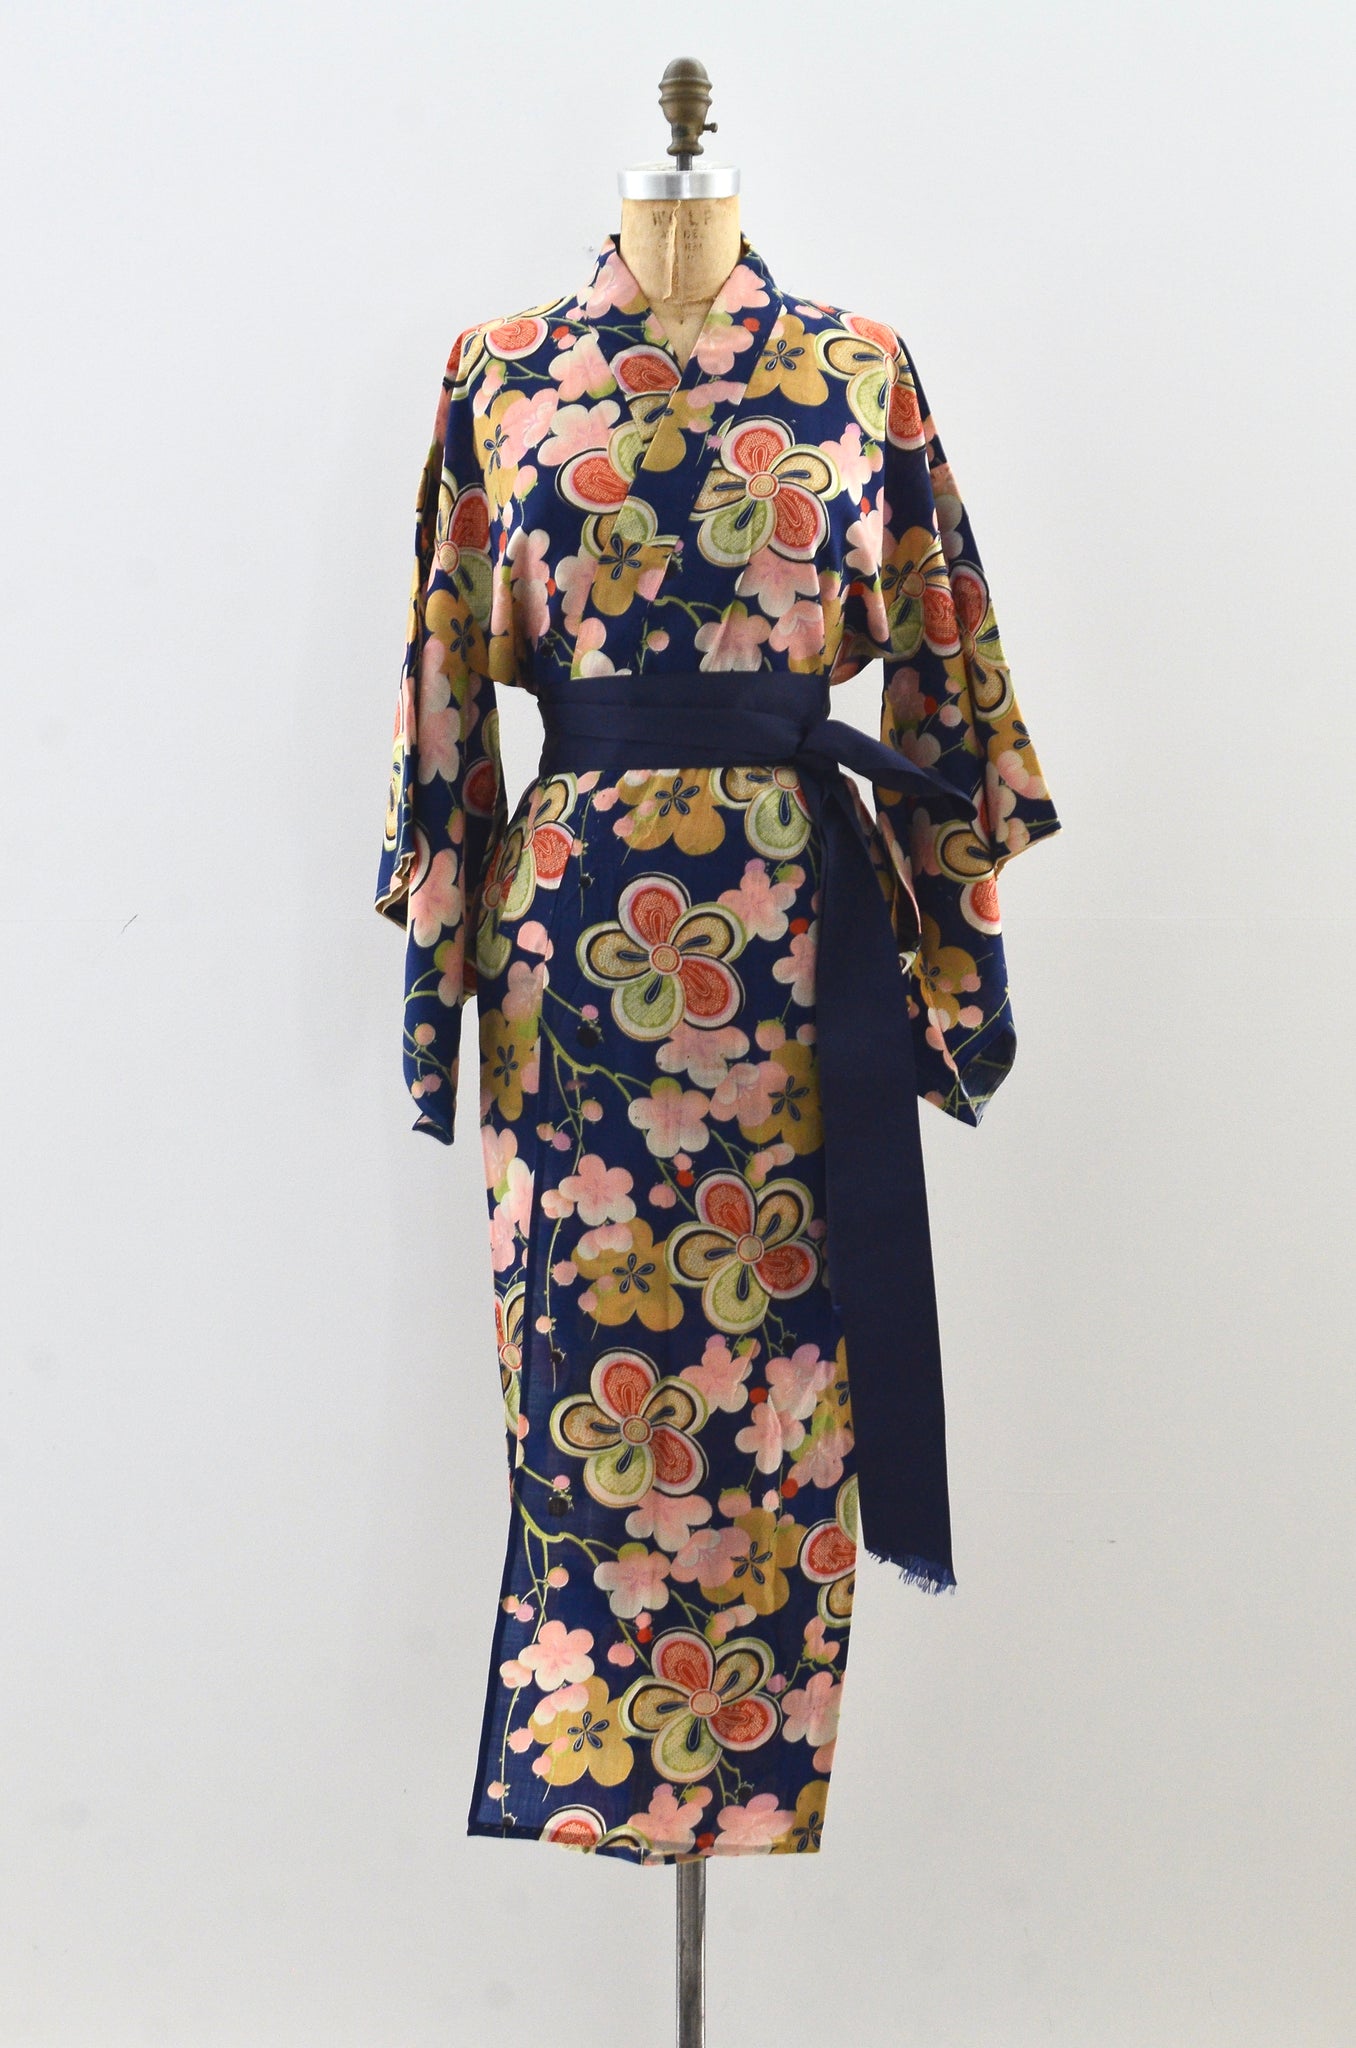 Old Floral Kimono